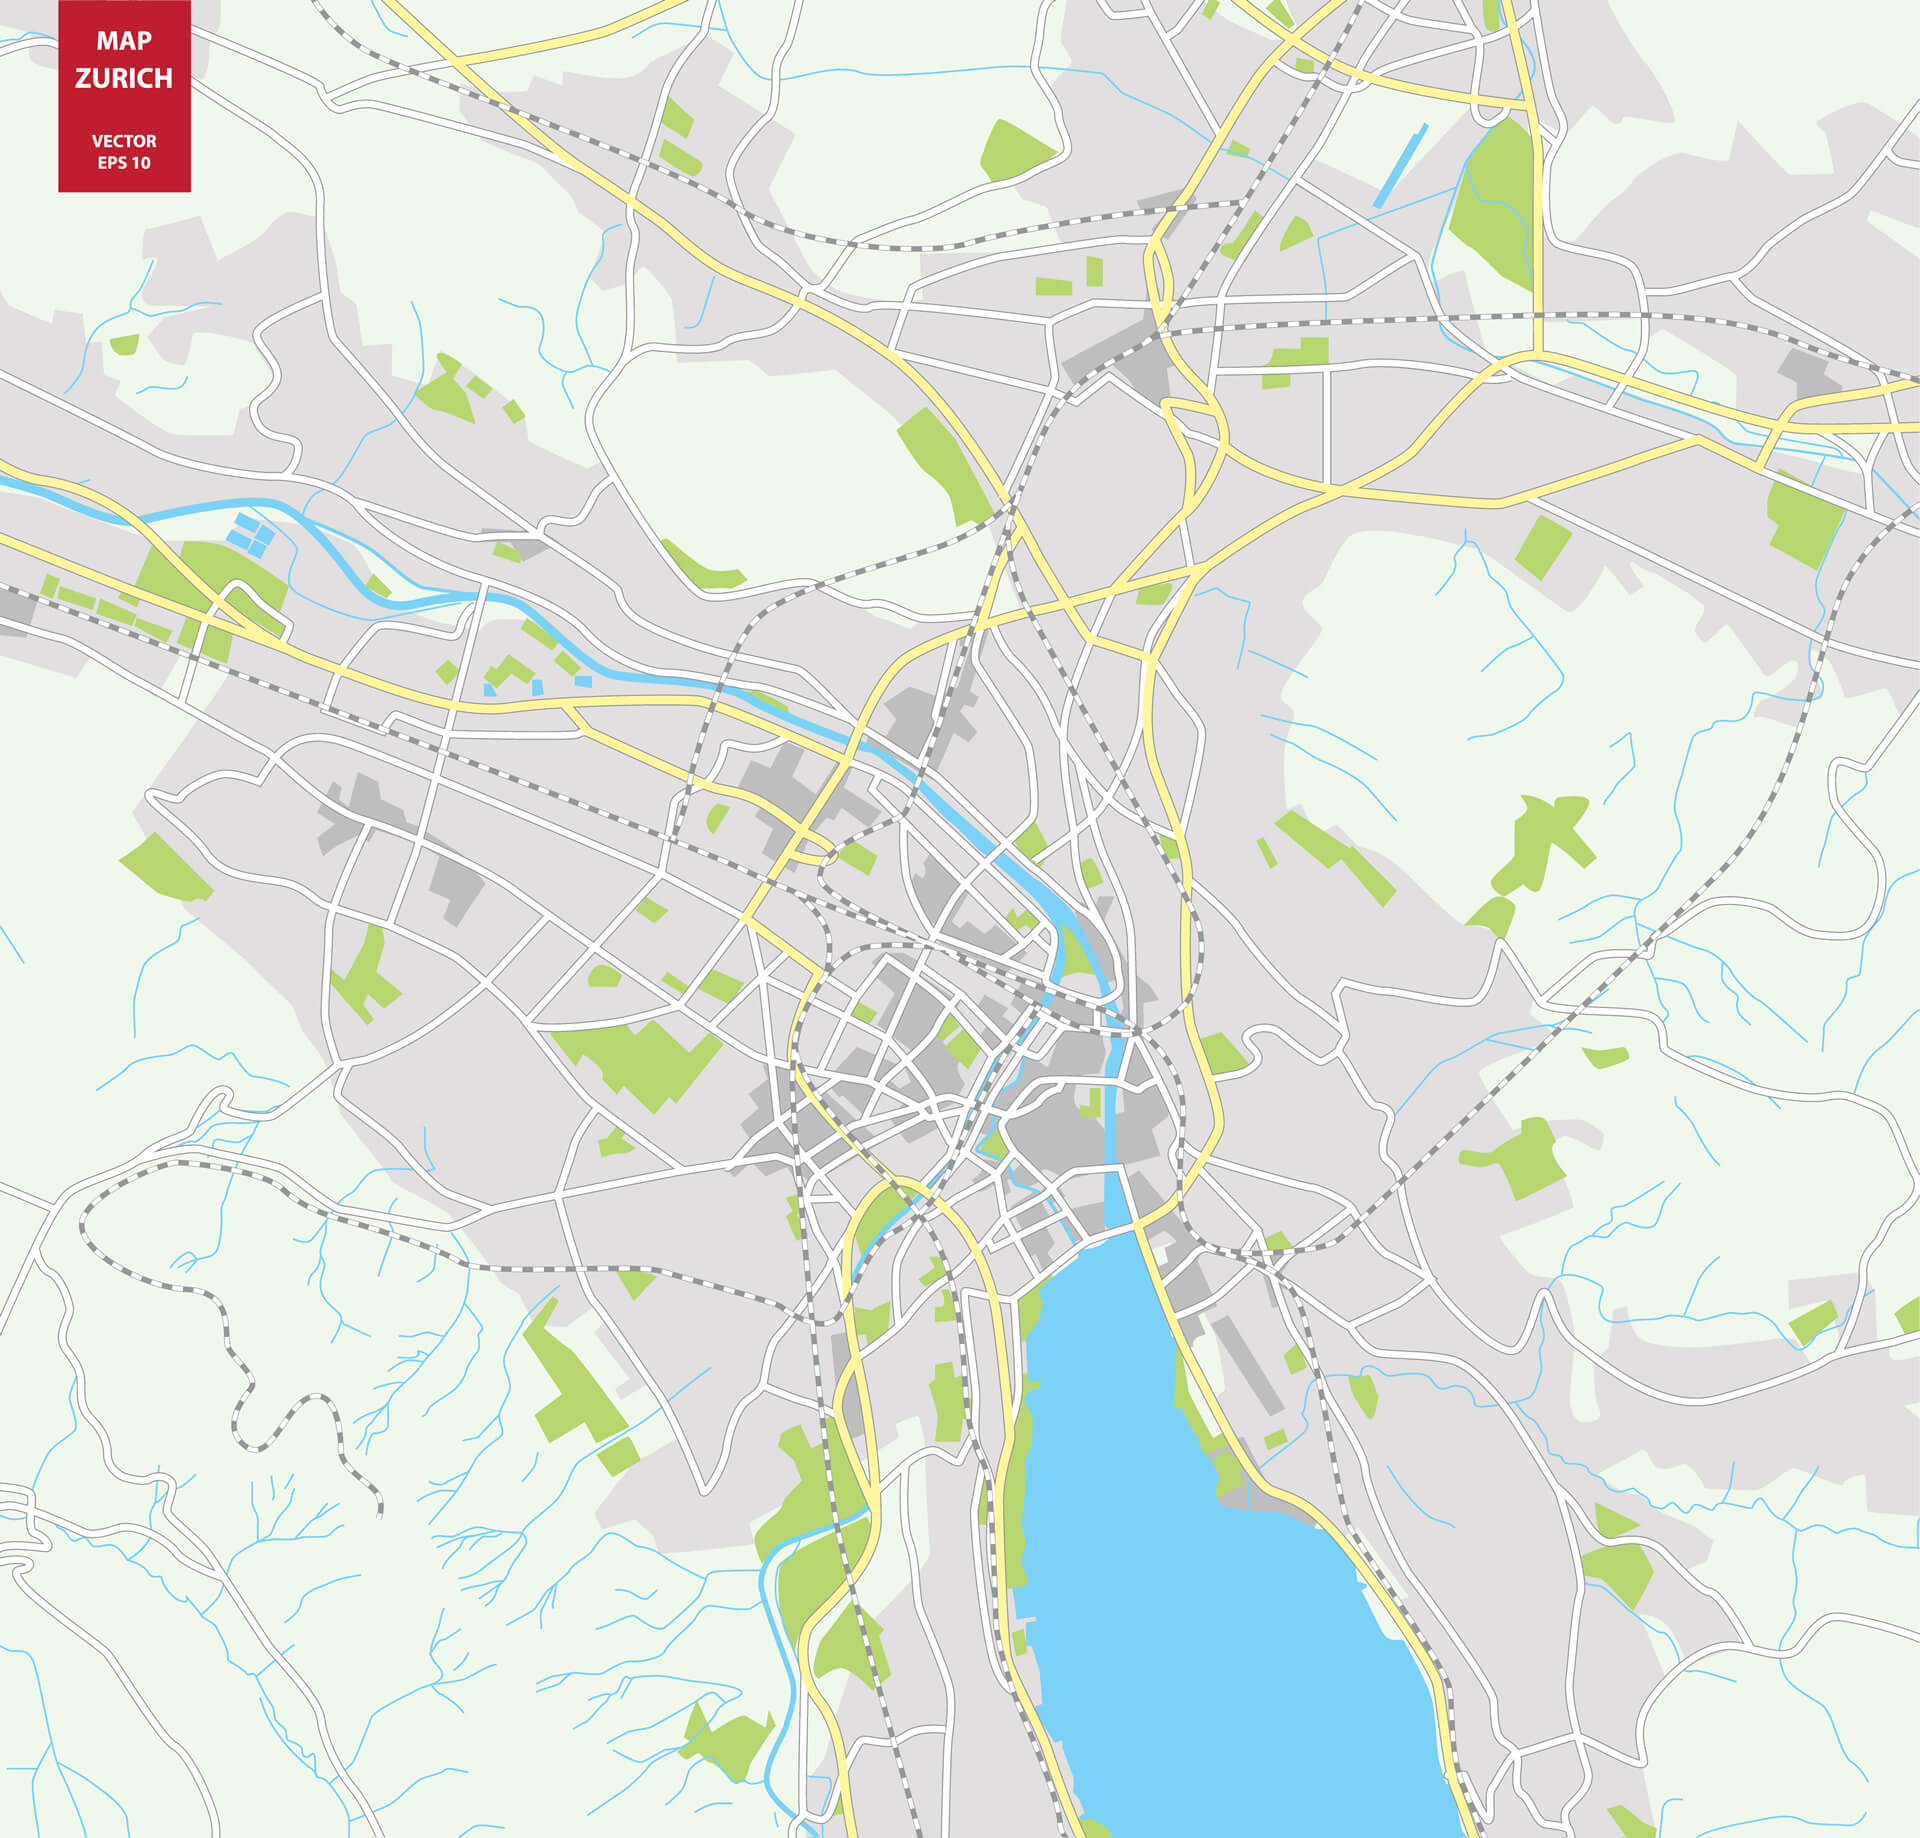 City Plan of Zurich